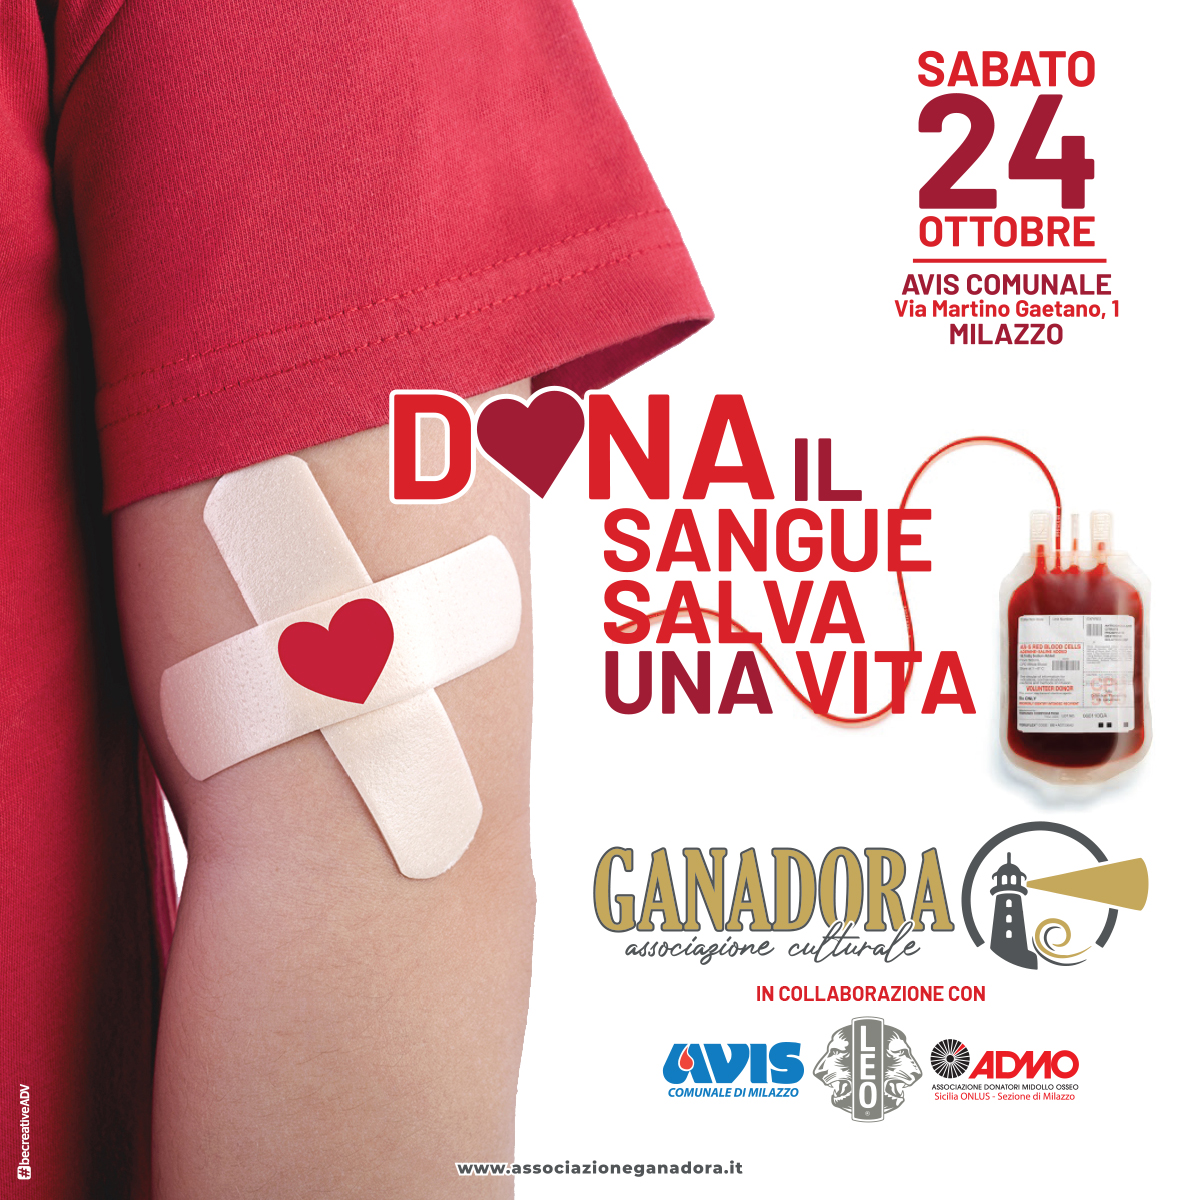 L'Associazione Ganadora promotore della manifestazione “Dona il sangue salva una vita”.